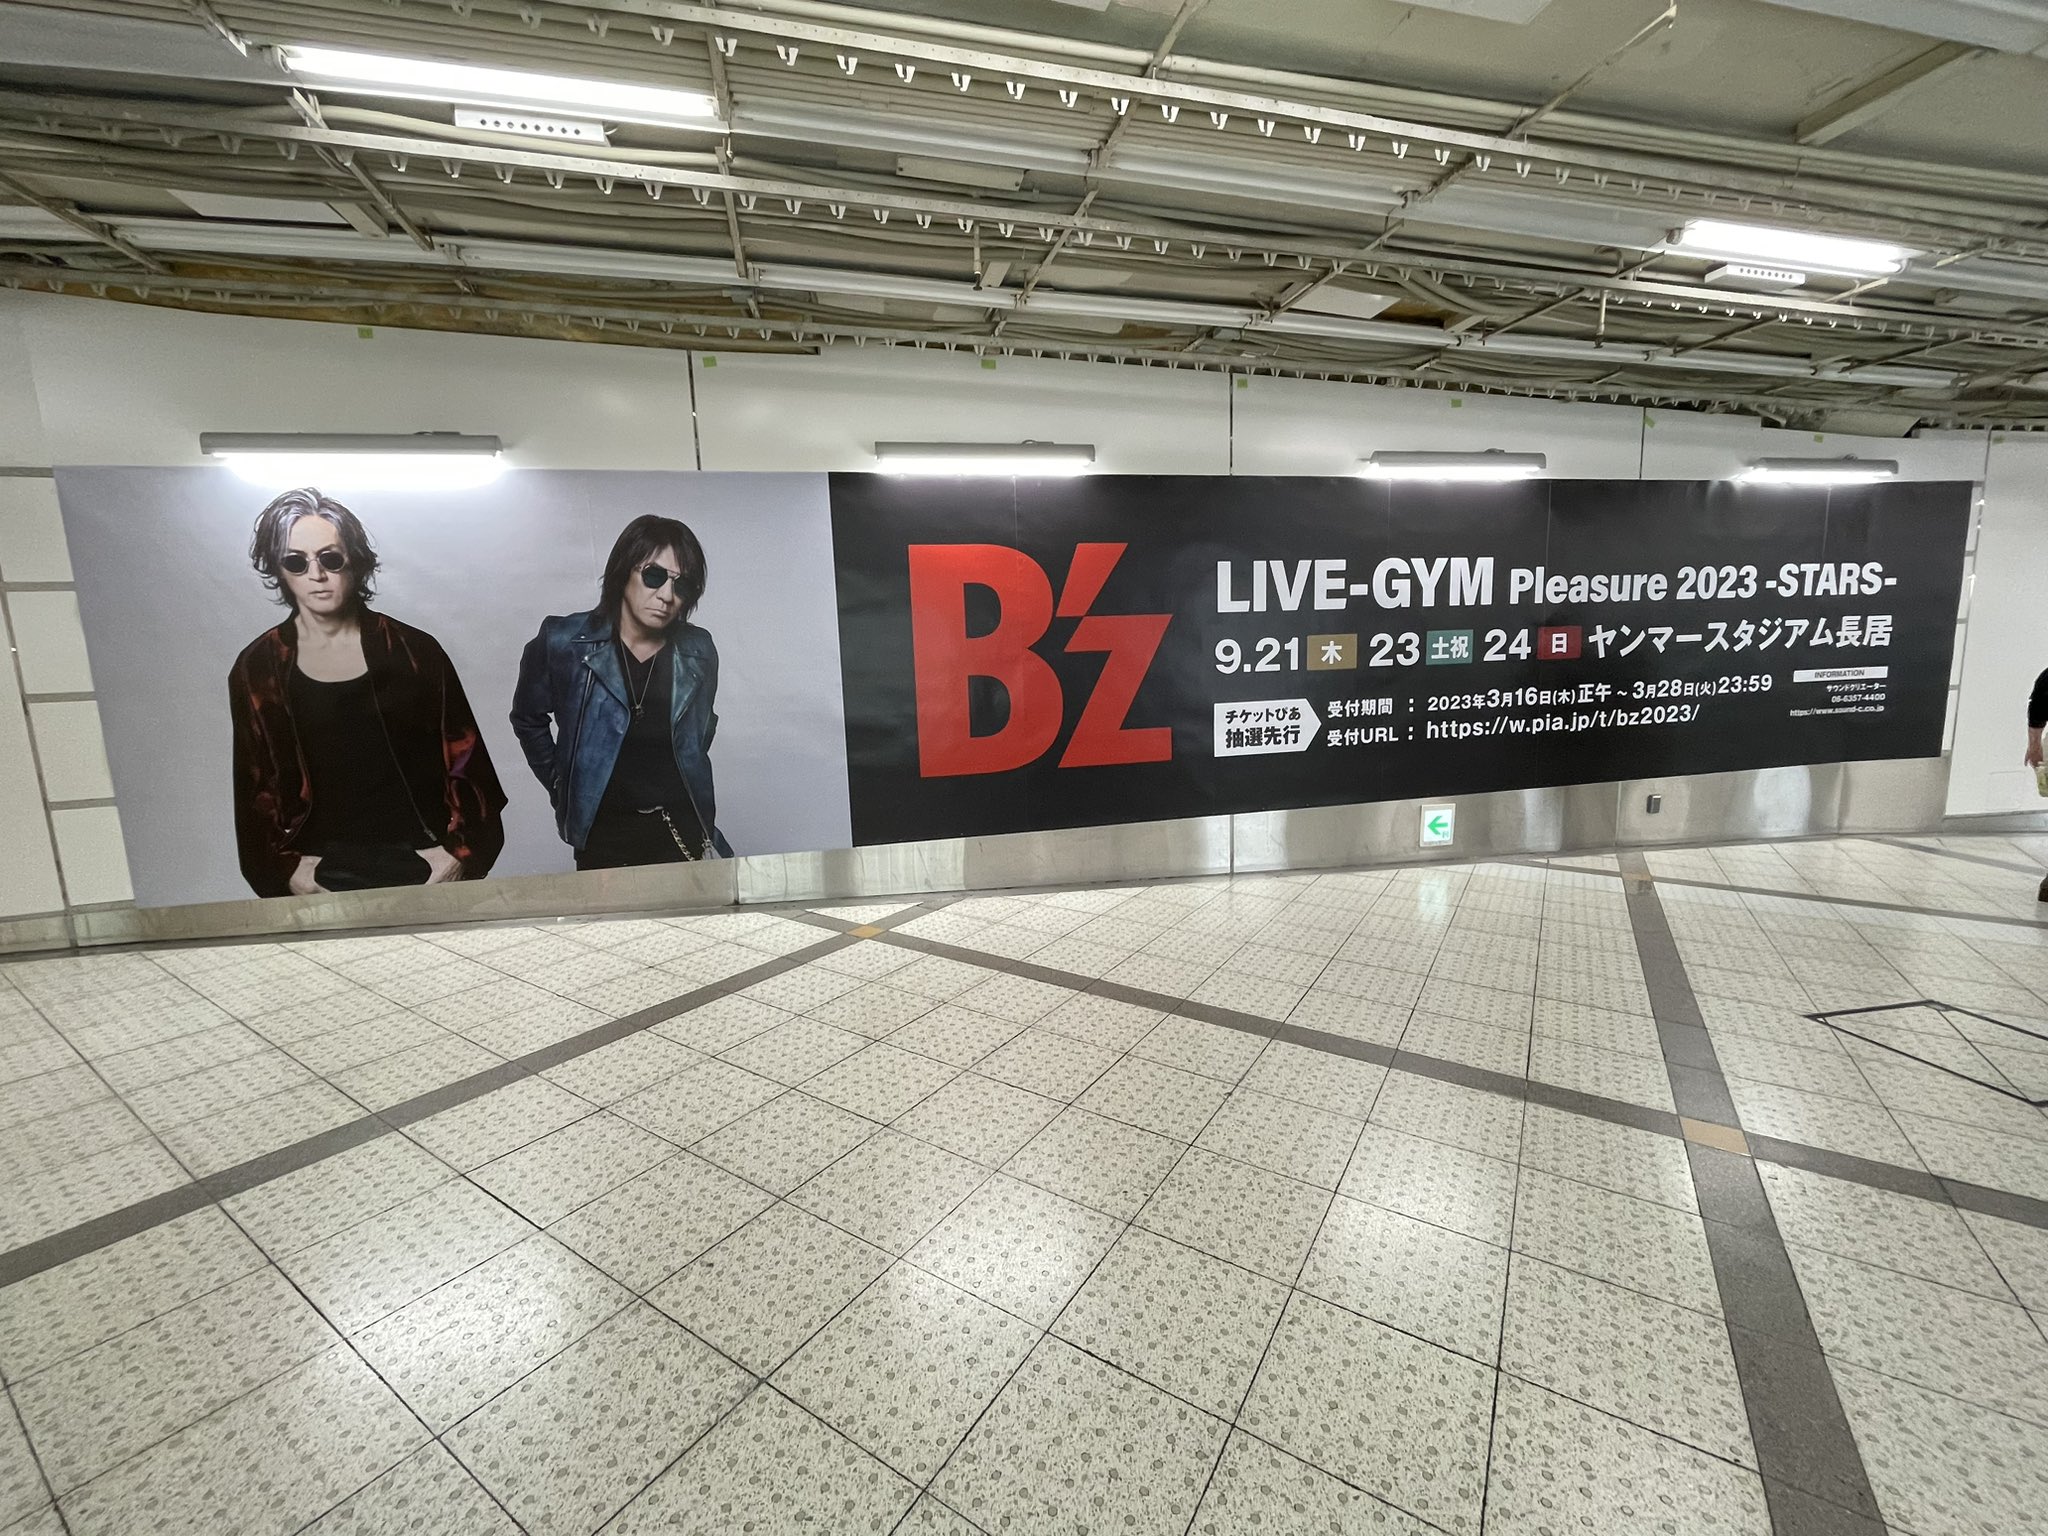 大阪・梅田の地下街に掲出された『B'z LIVE-GYM Pleasure 2023 -STARS-』のポスター広告